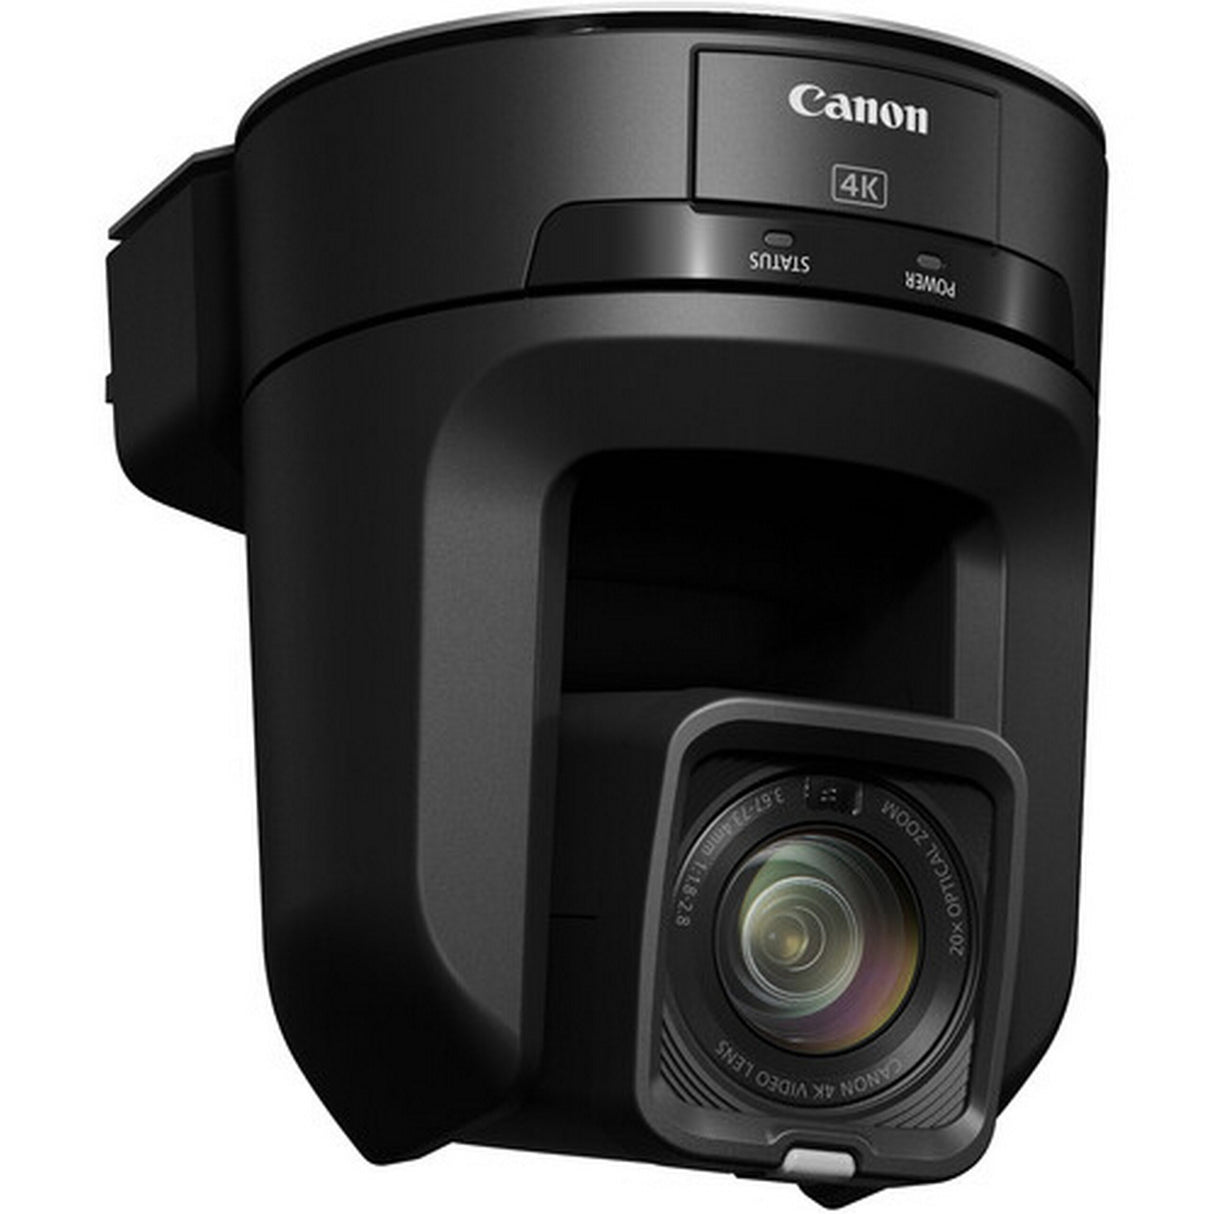 Canon CR-N300 NDI|HX 20x 4K PTZ Camera, Black